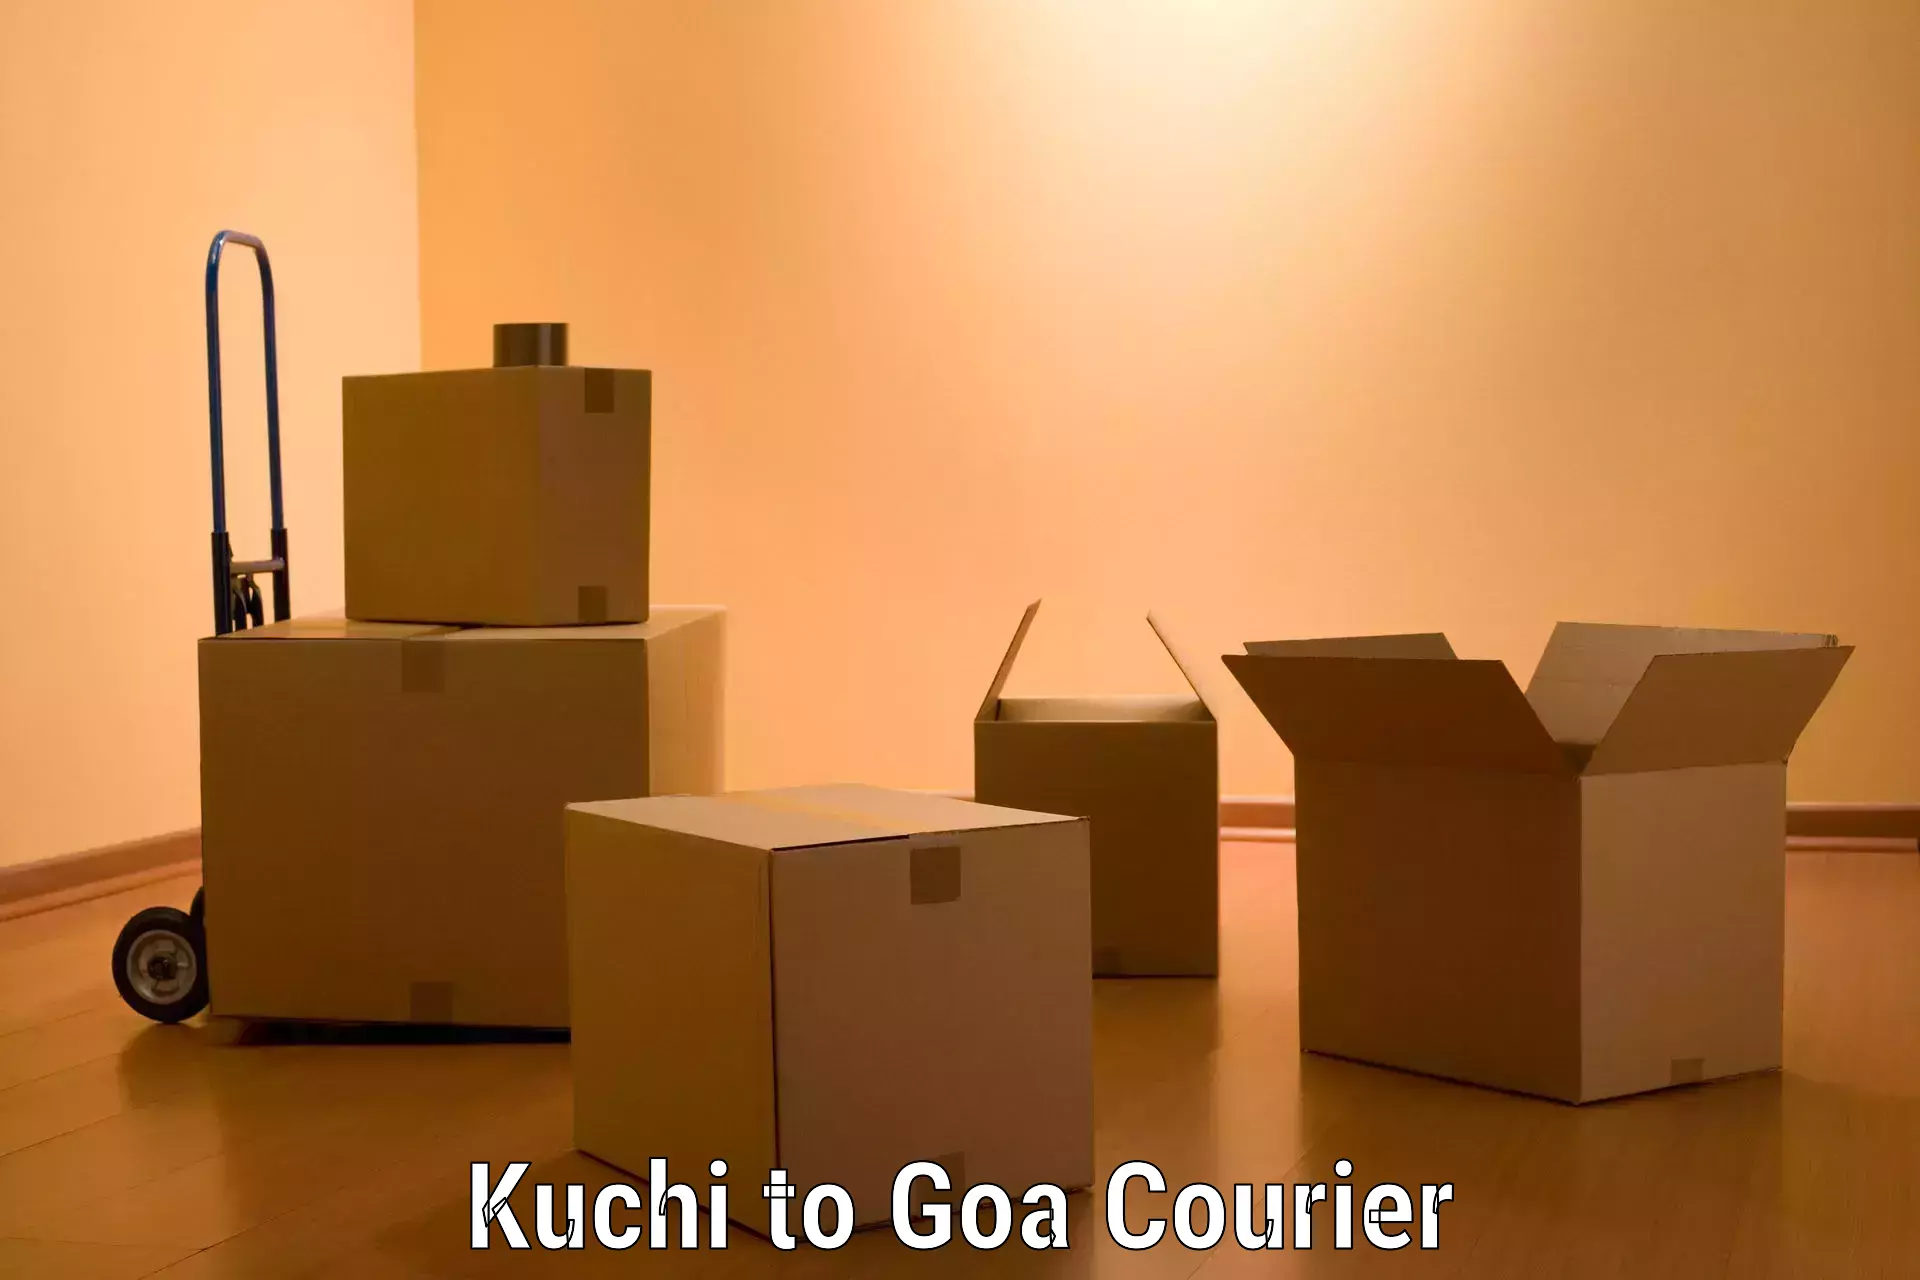 Home shifting experts Kuchi to South Goa